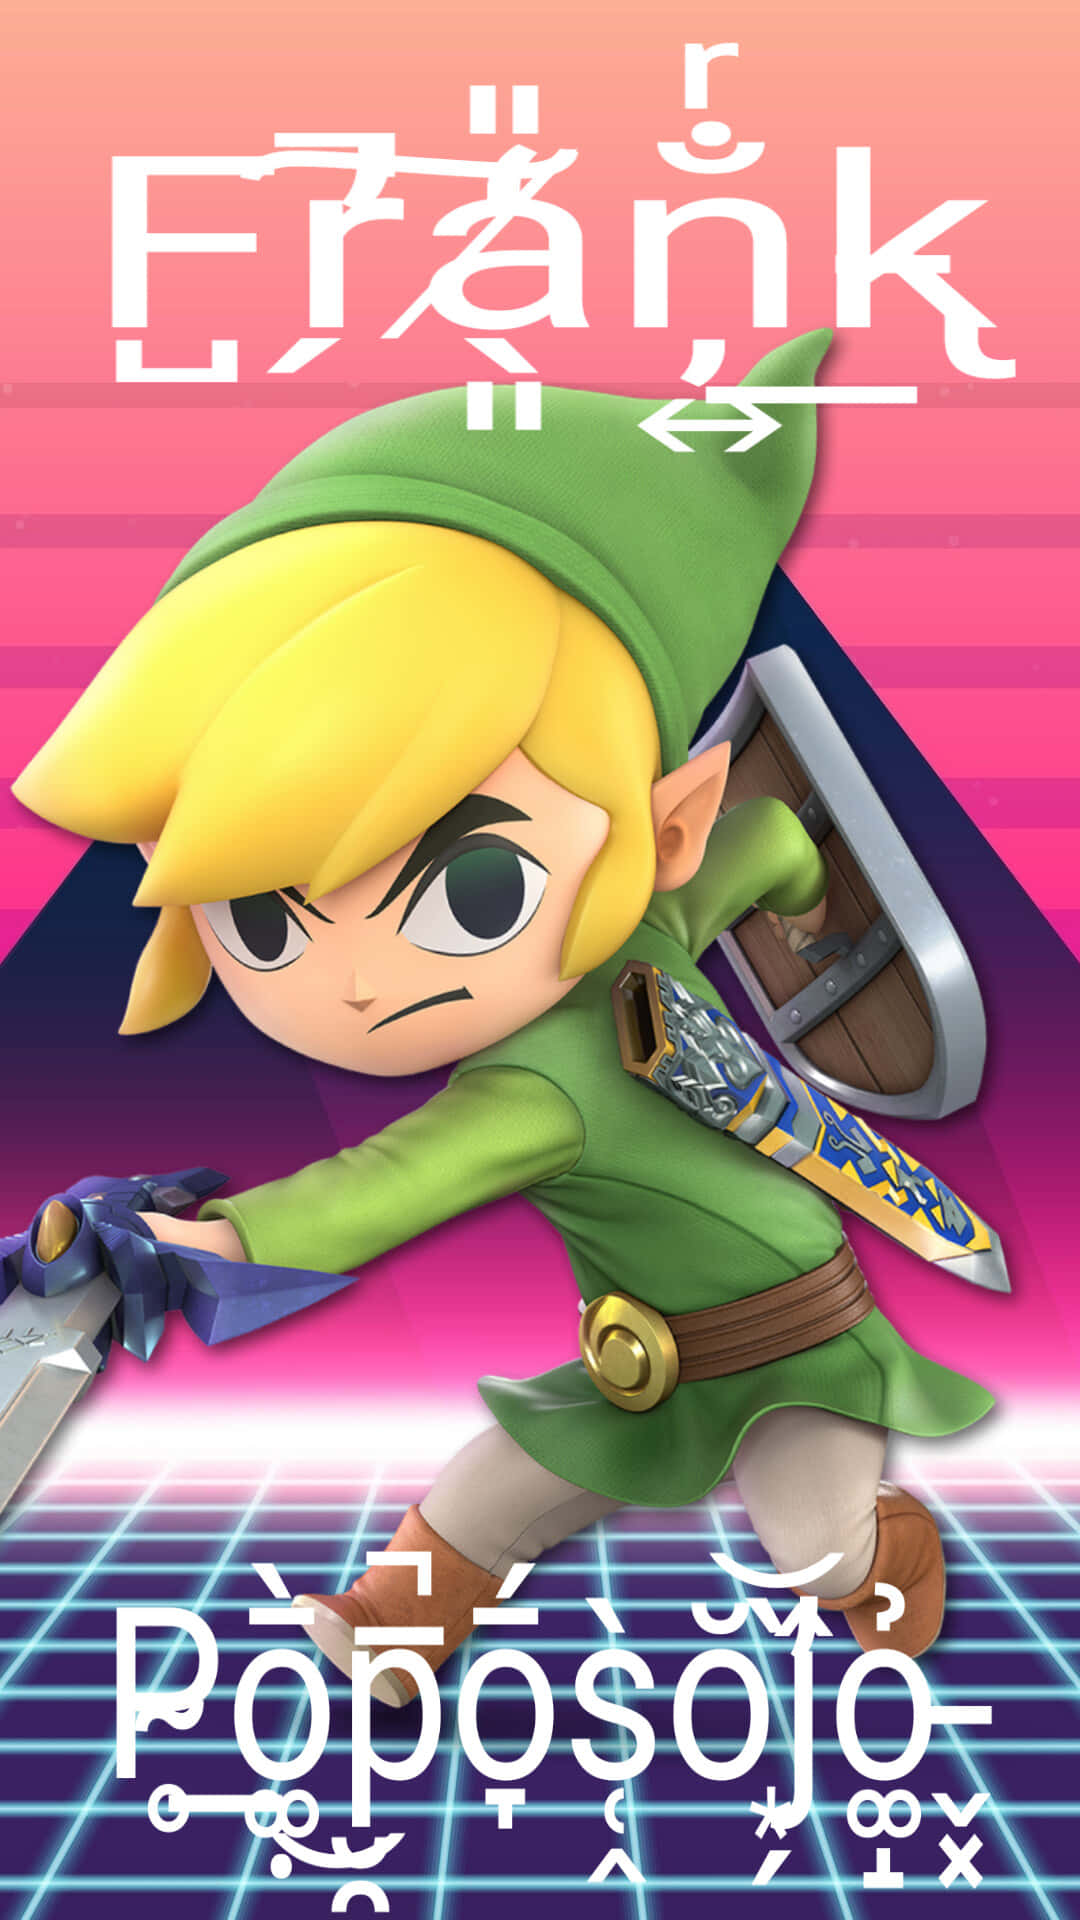 Link The Hero Of Time From Nintendo’s Legend Of Zelda